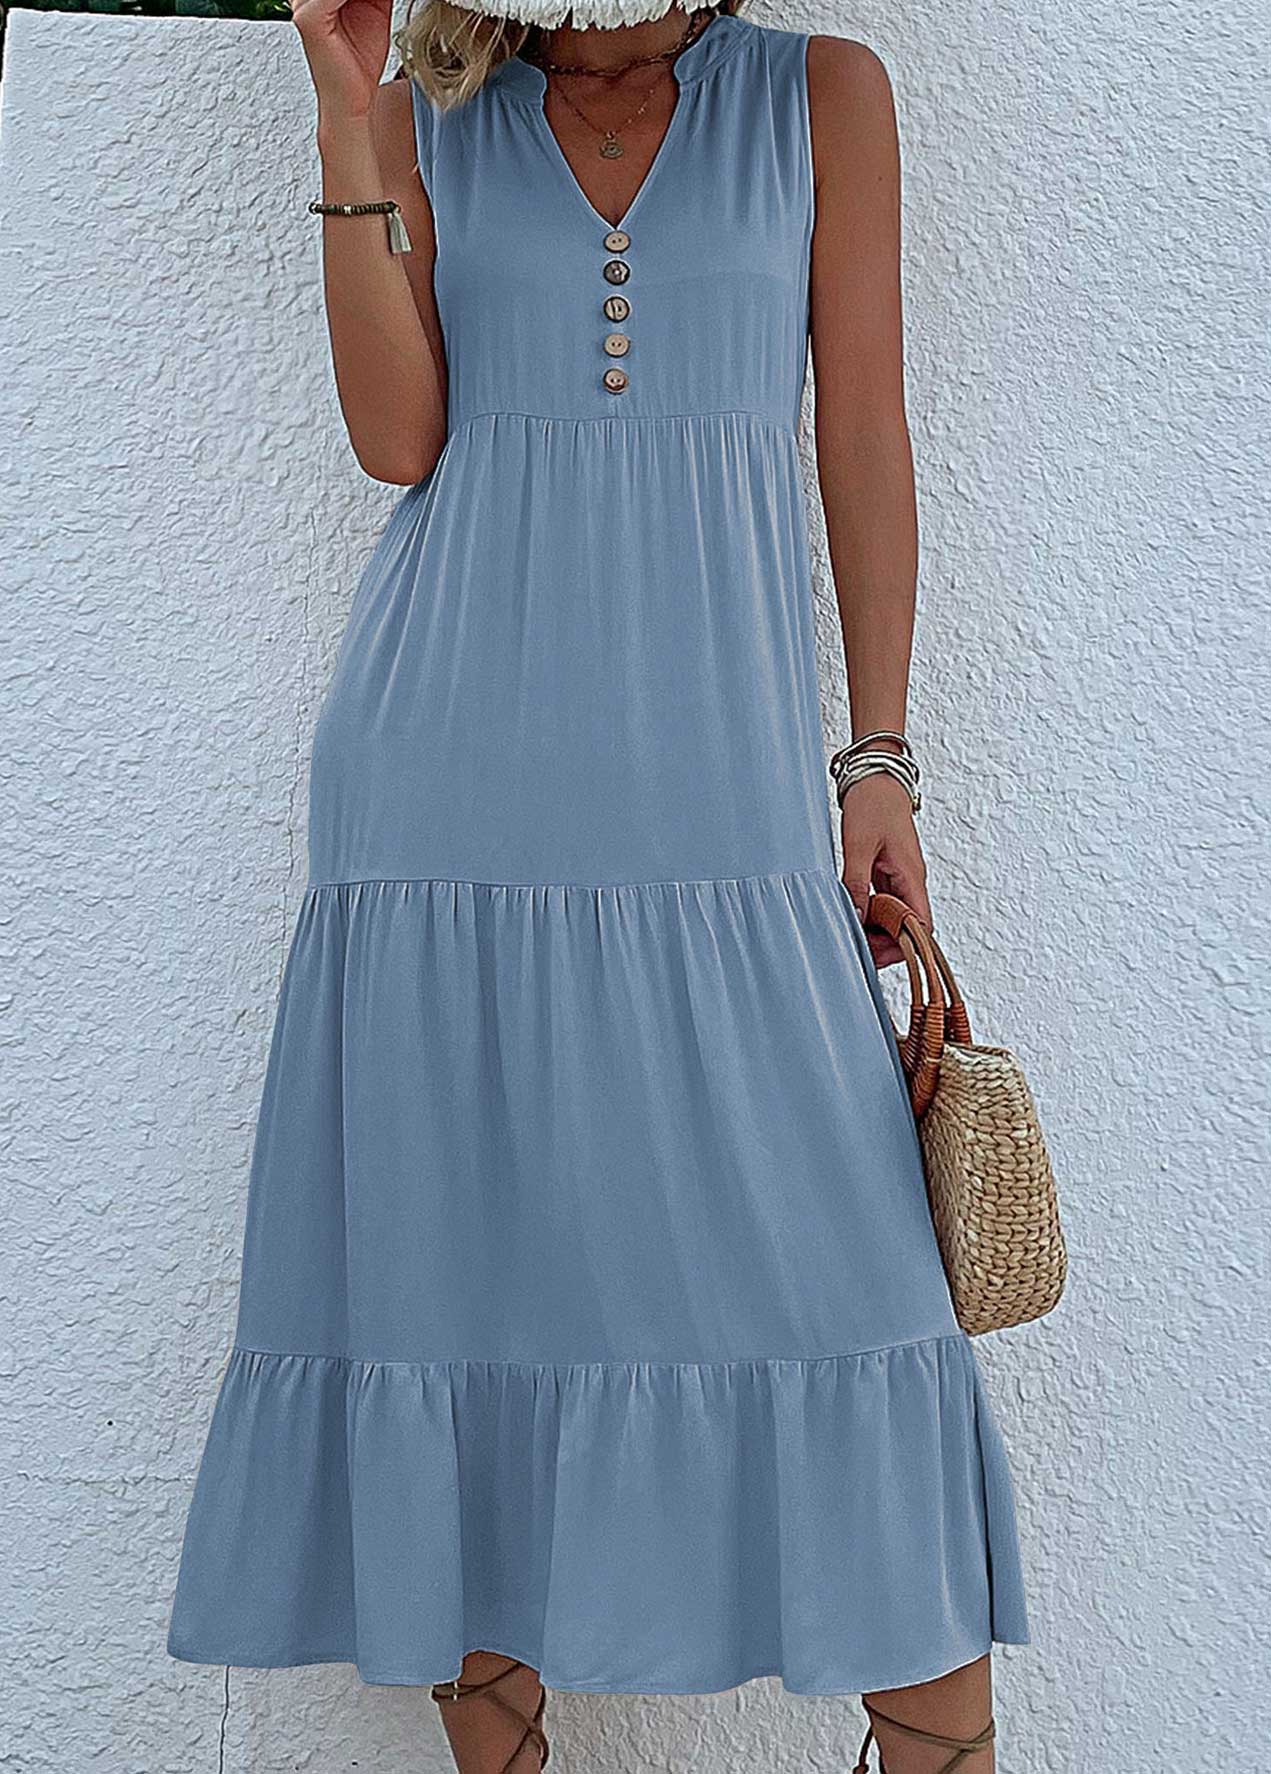 Dusty Blue Button A Line Sleeveless Dress